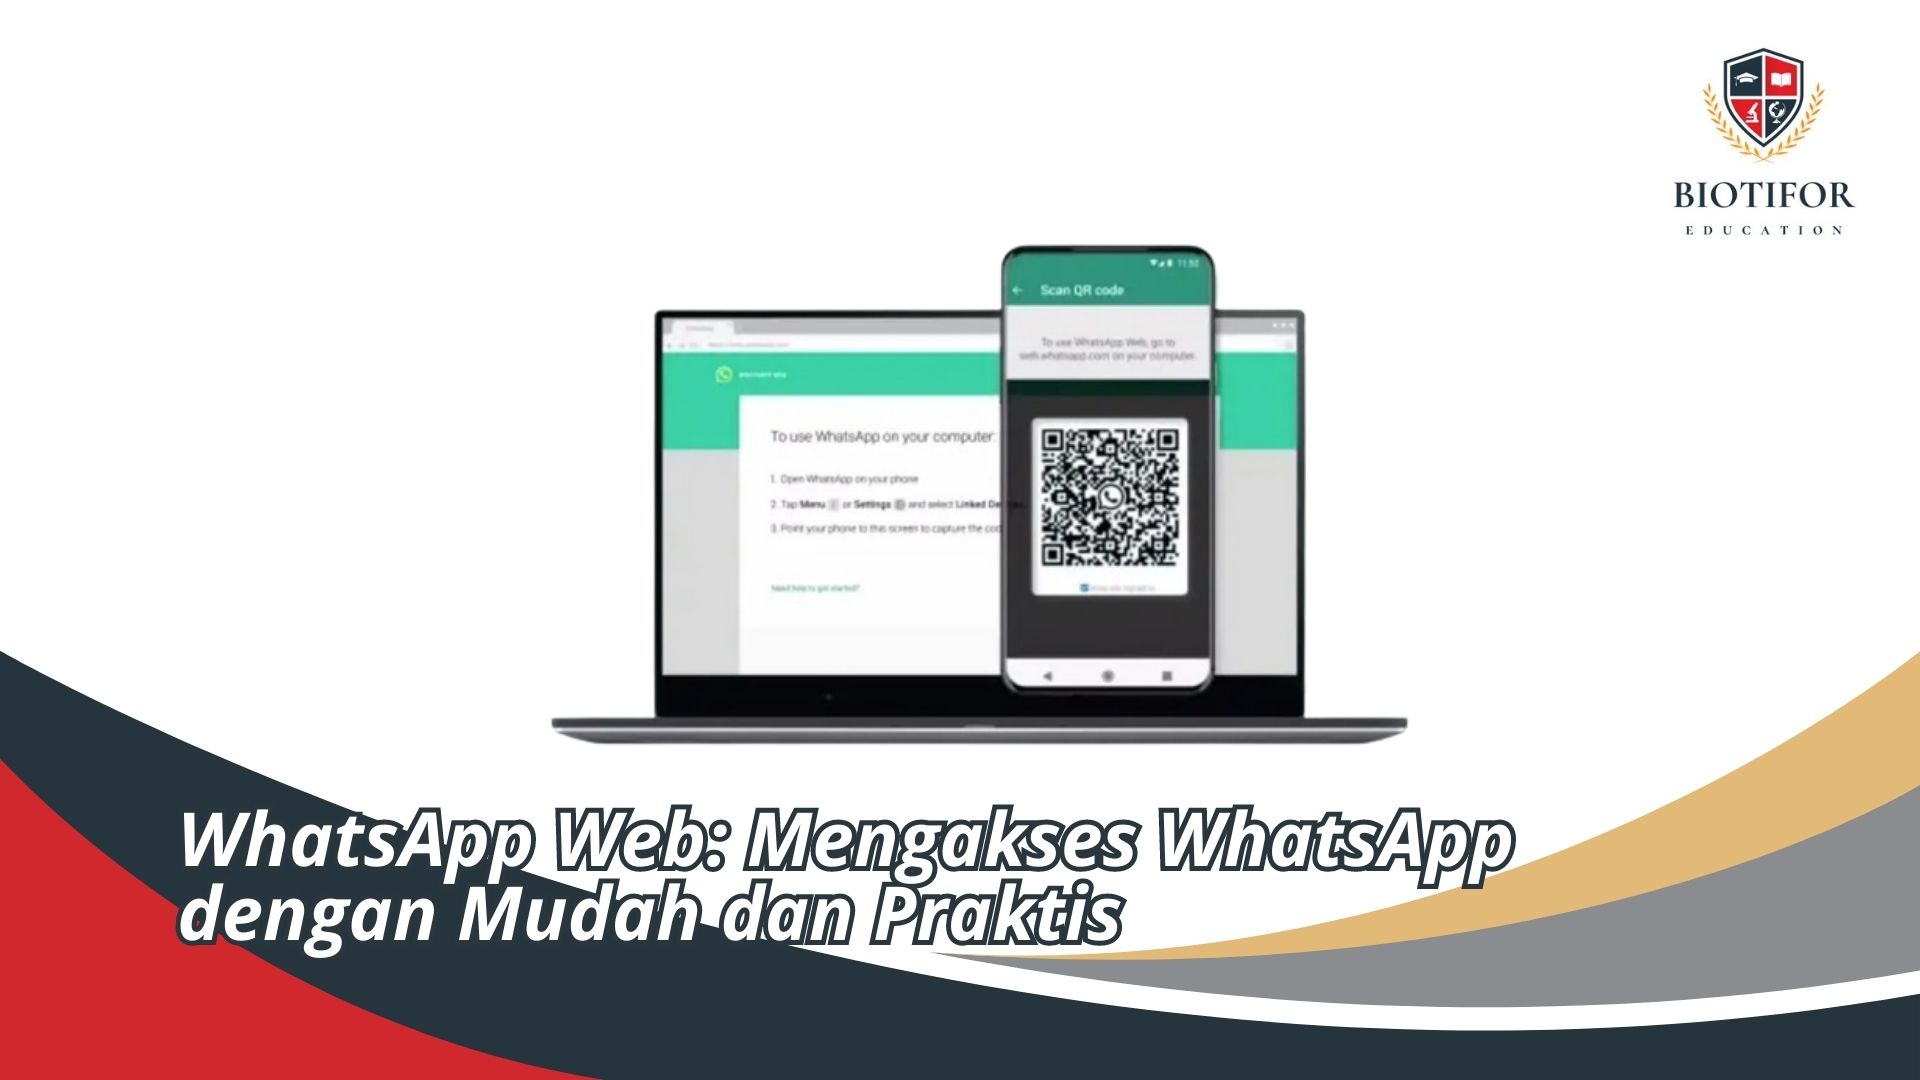 WhatsApp Web: Mengakses WhatsApp dengan Mudah dan Praktis